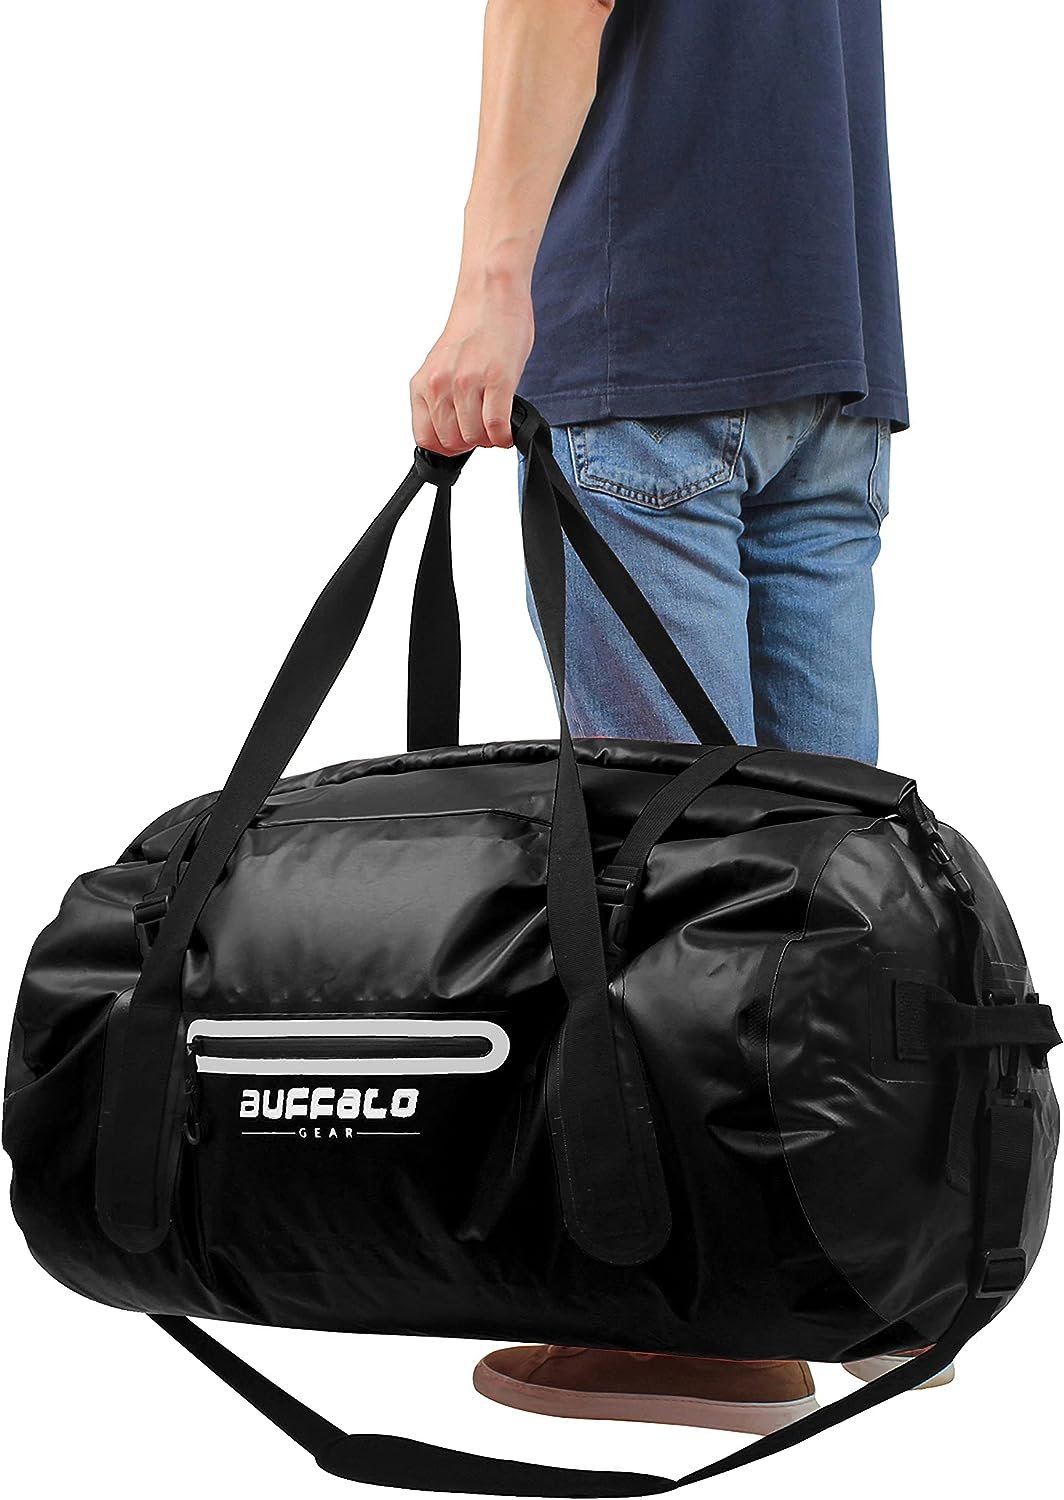 Buffalo Gear Drybag 40L Waterproof Duffel Review